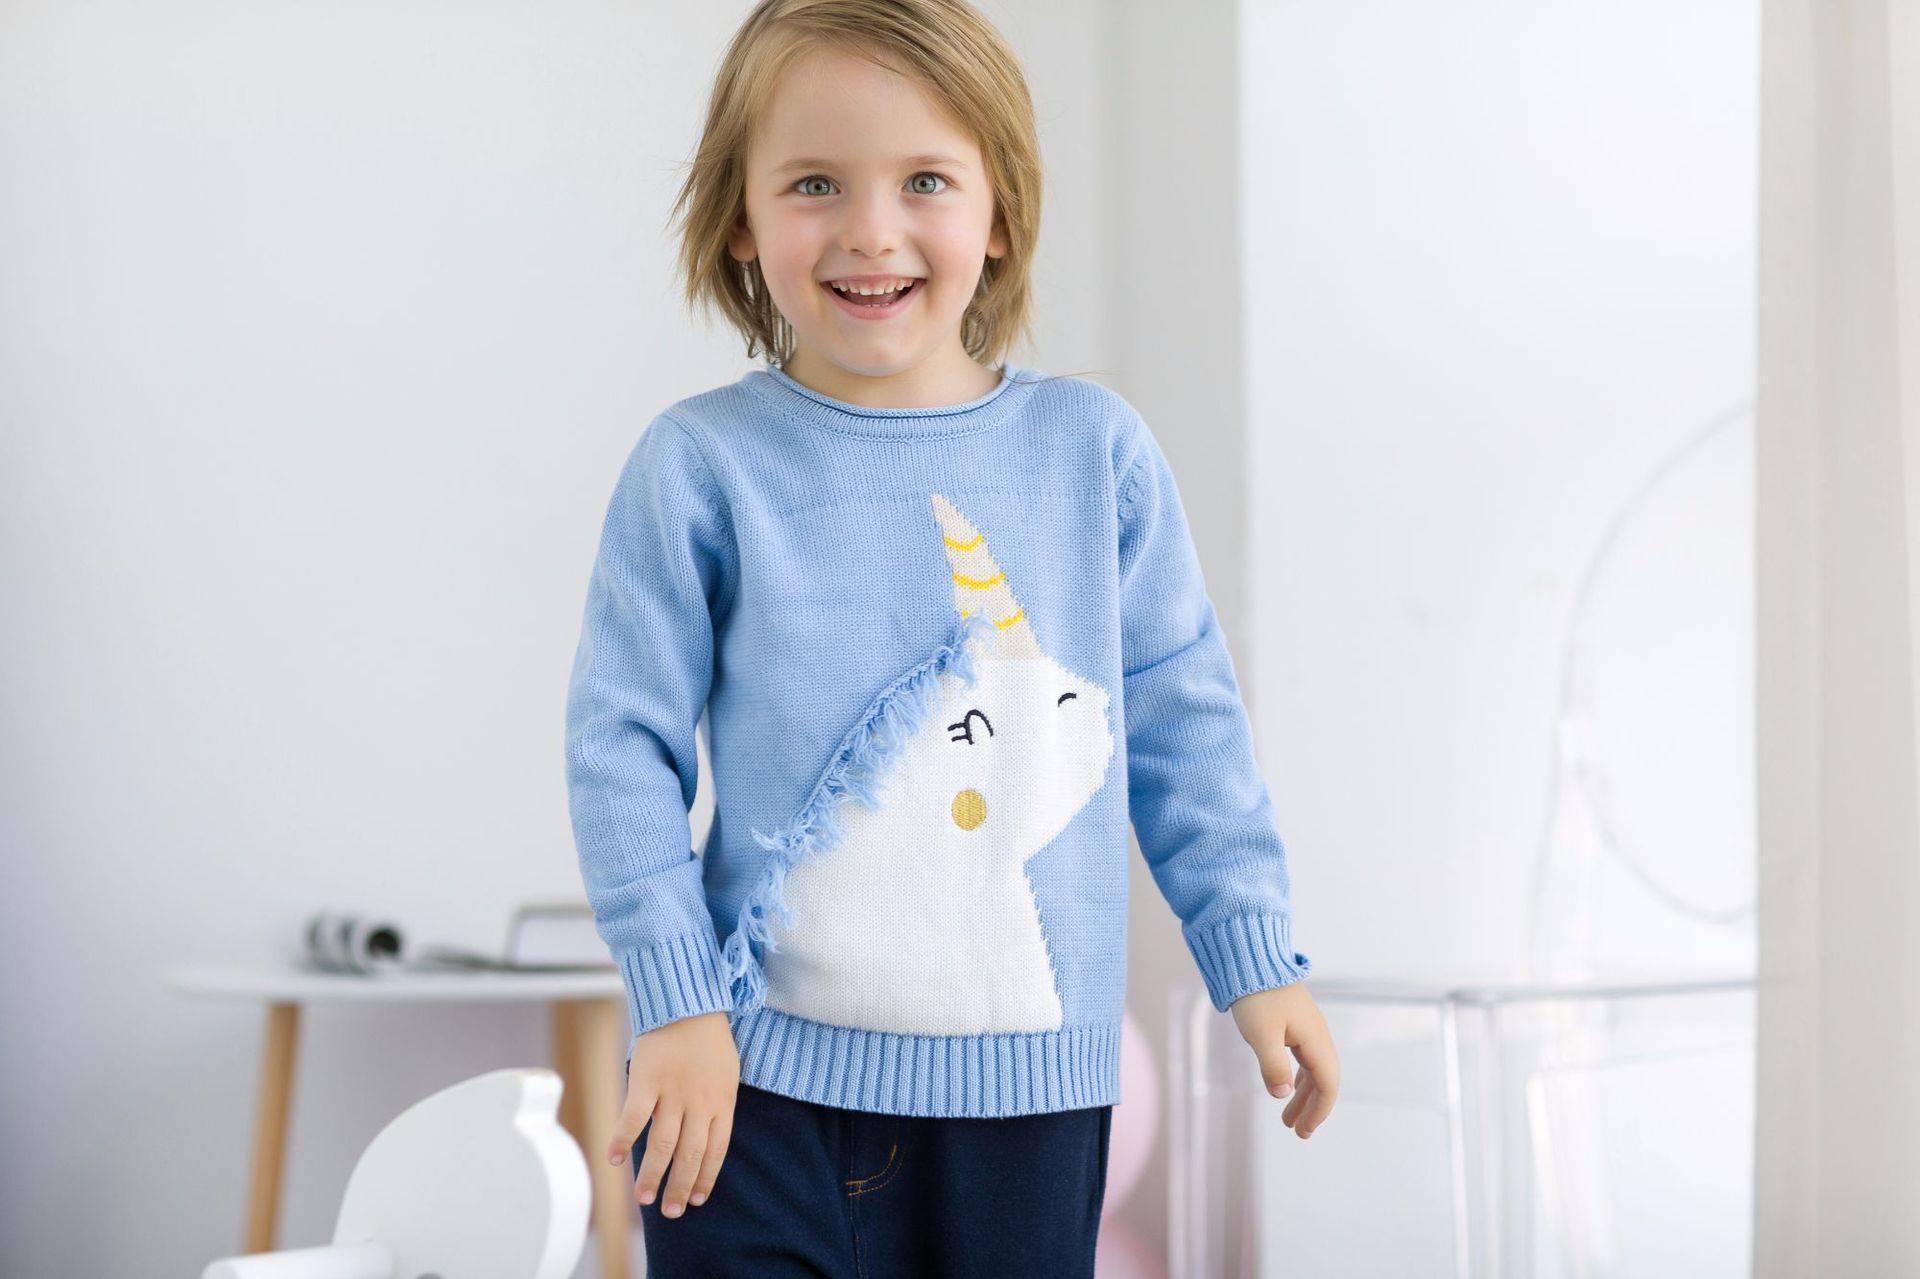 Unicorn Knit Sweater - Unicorn